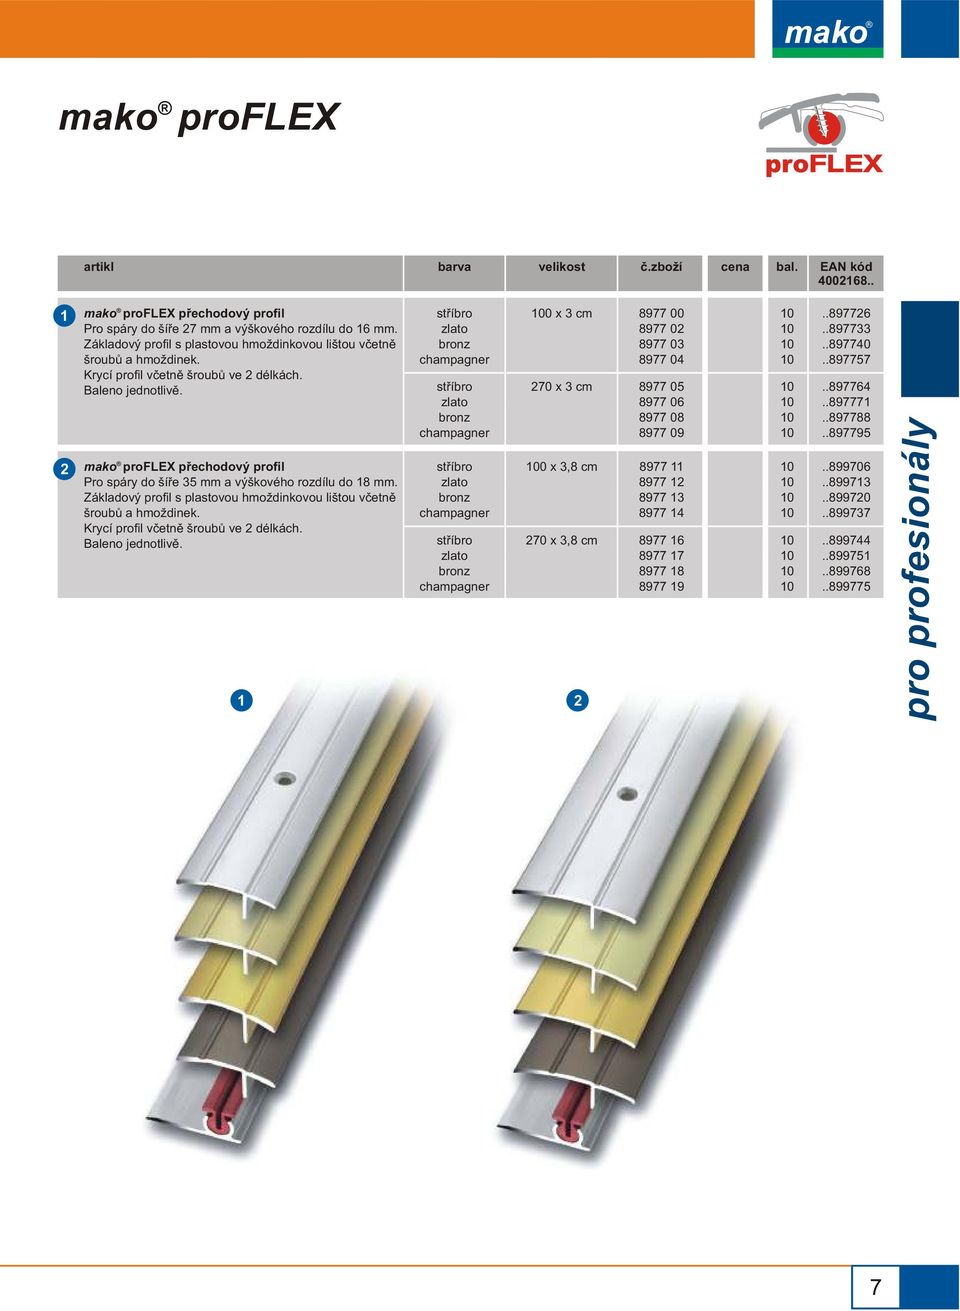 mako proflex pøechodový profil Pro spáry do šíøe mm a výškového rozdílu do 8 mm.